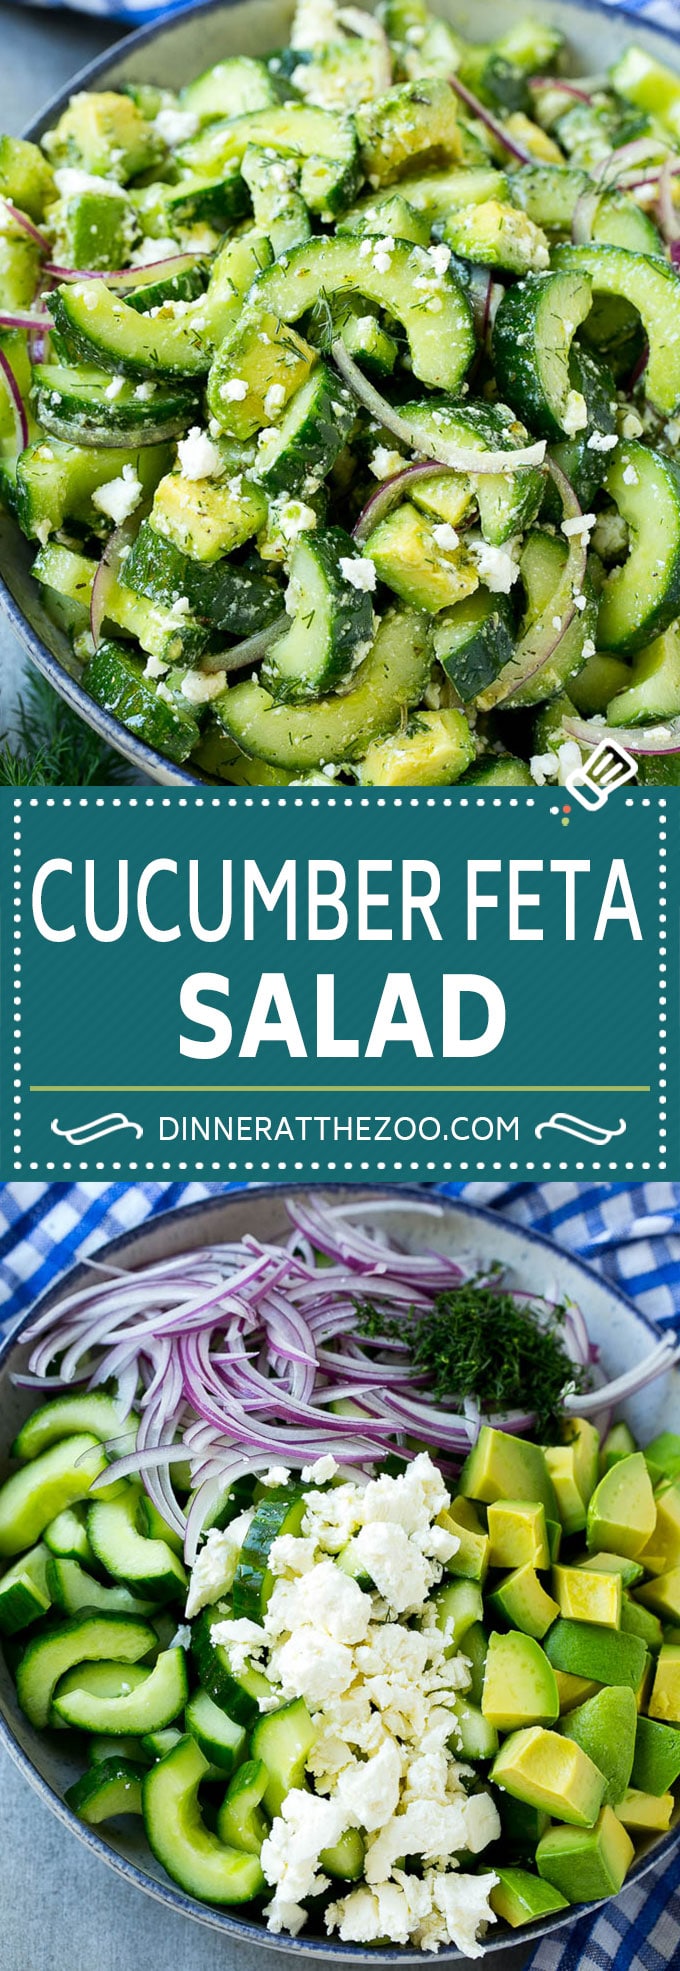 Cucumber Feta Salad Recipe | Cucumber Salad | Feta Cheese Salad | Summer Salad #salad #cucumber #dinneratthezoo